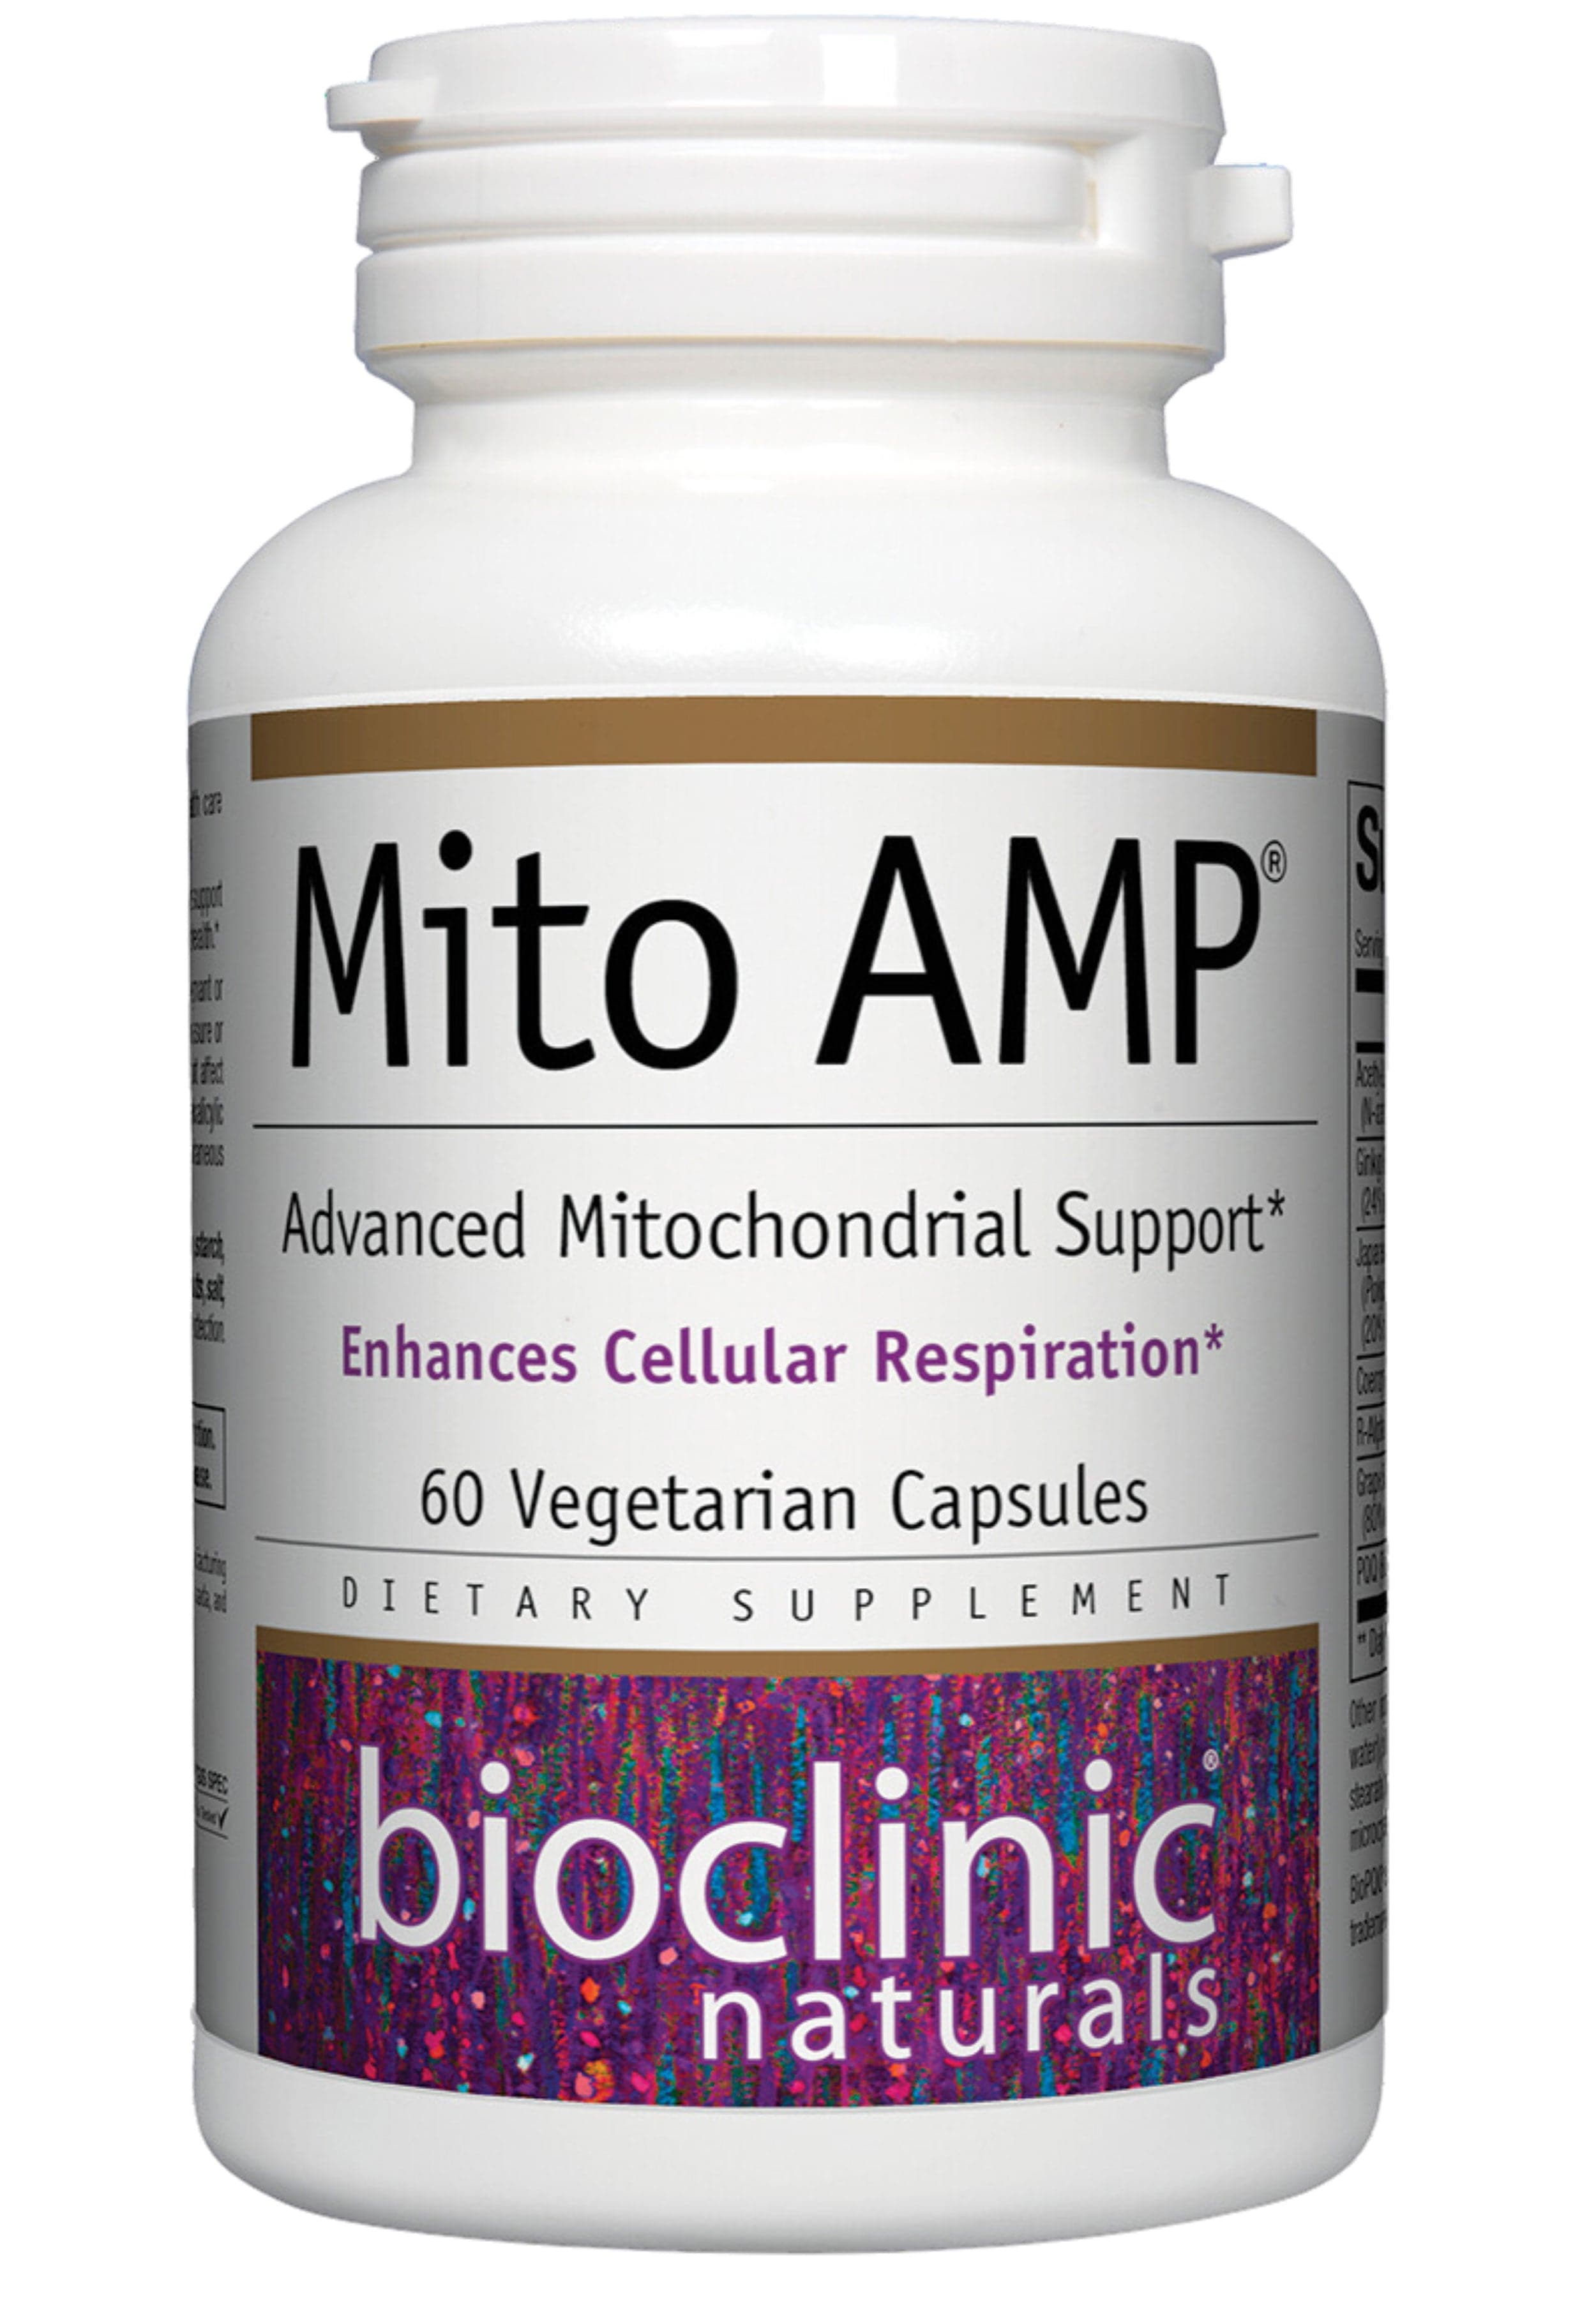 Bioclinic Naturals Mito AMP